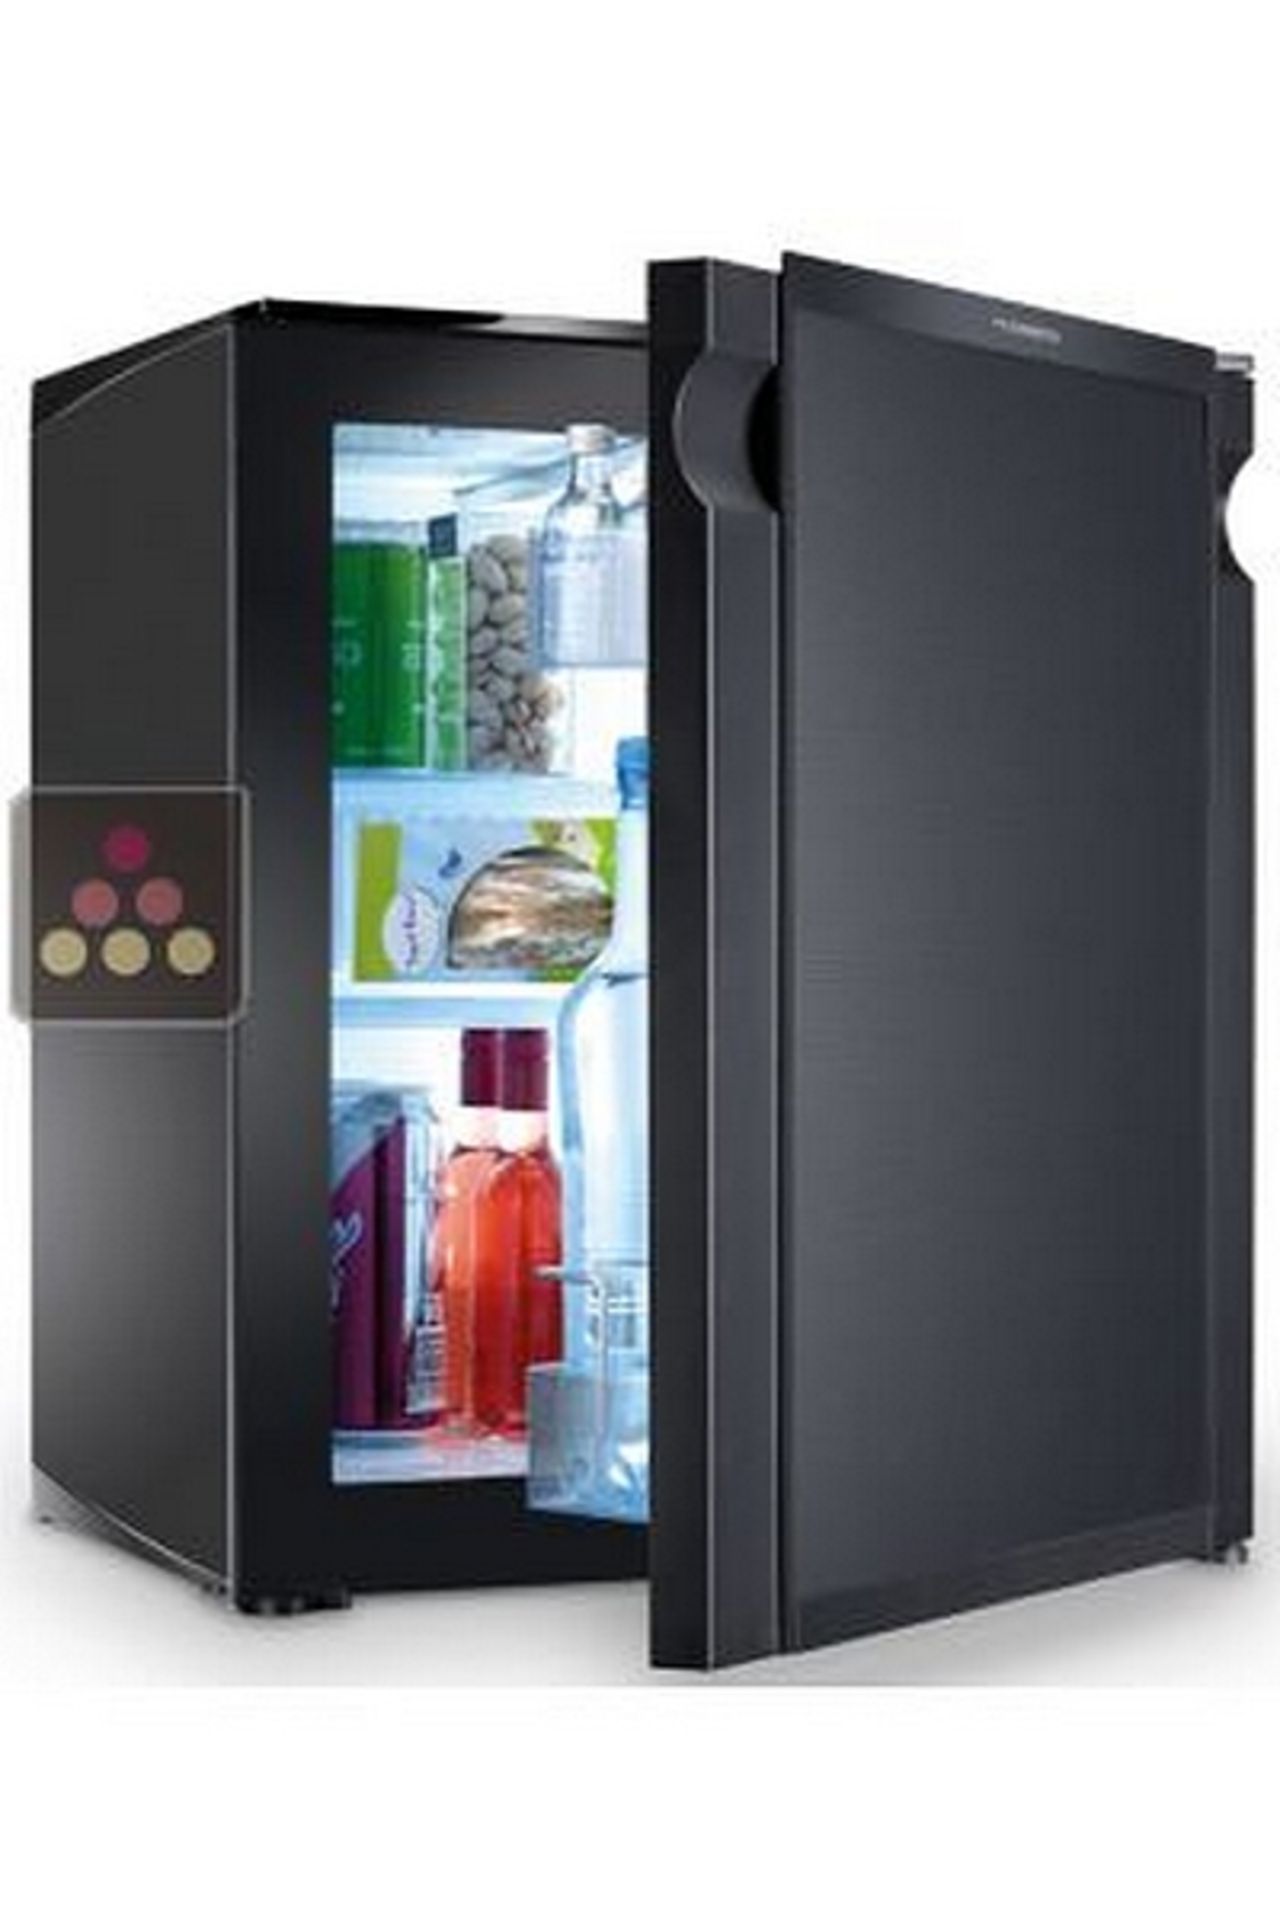 Dometic H20-50 minibar fridge 50 litre capacity